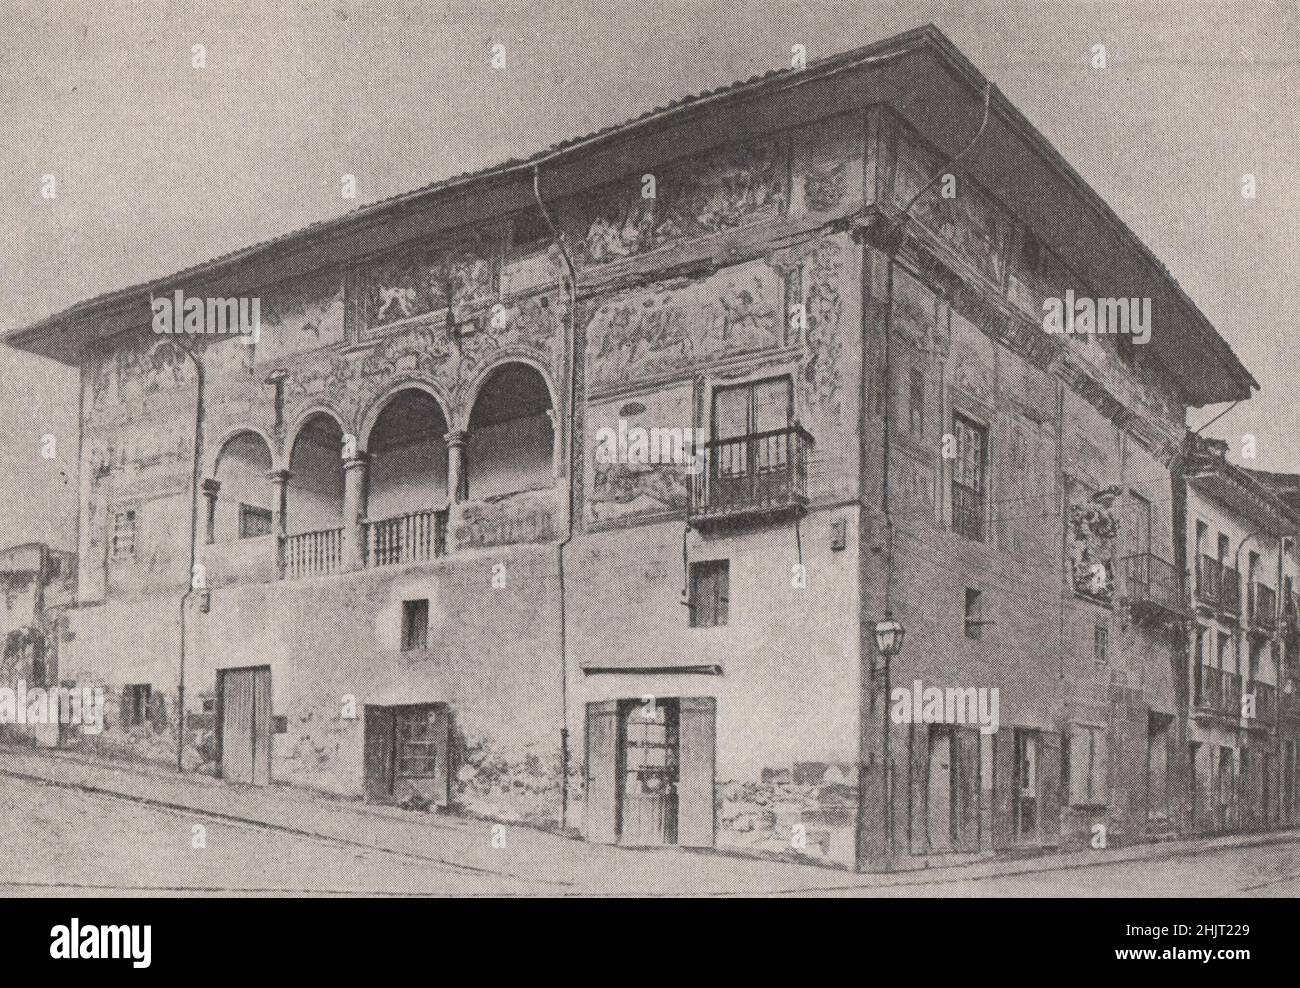 Wandgemälde eines Gebäudes aus der alten Welt im Baskenland. Spanien (1923) Stockfoto